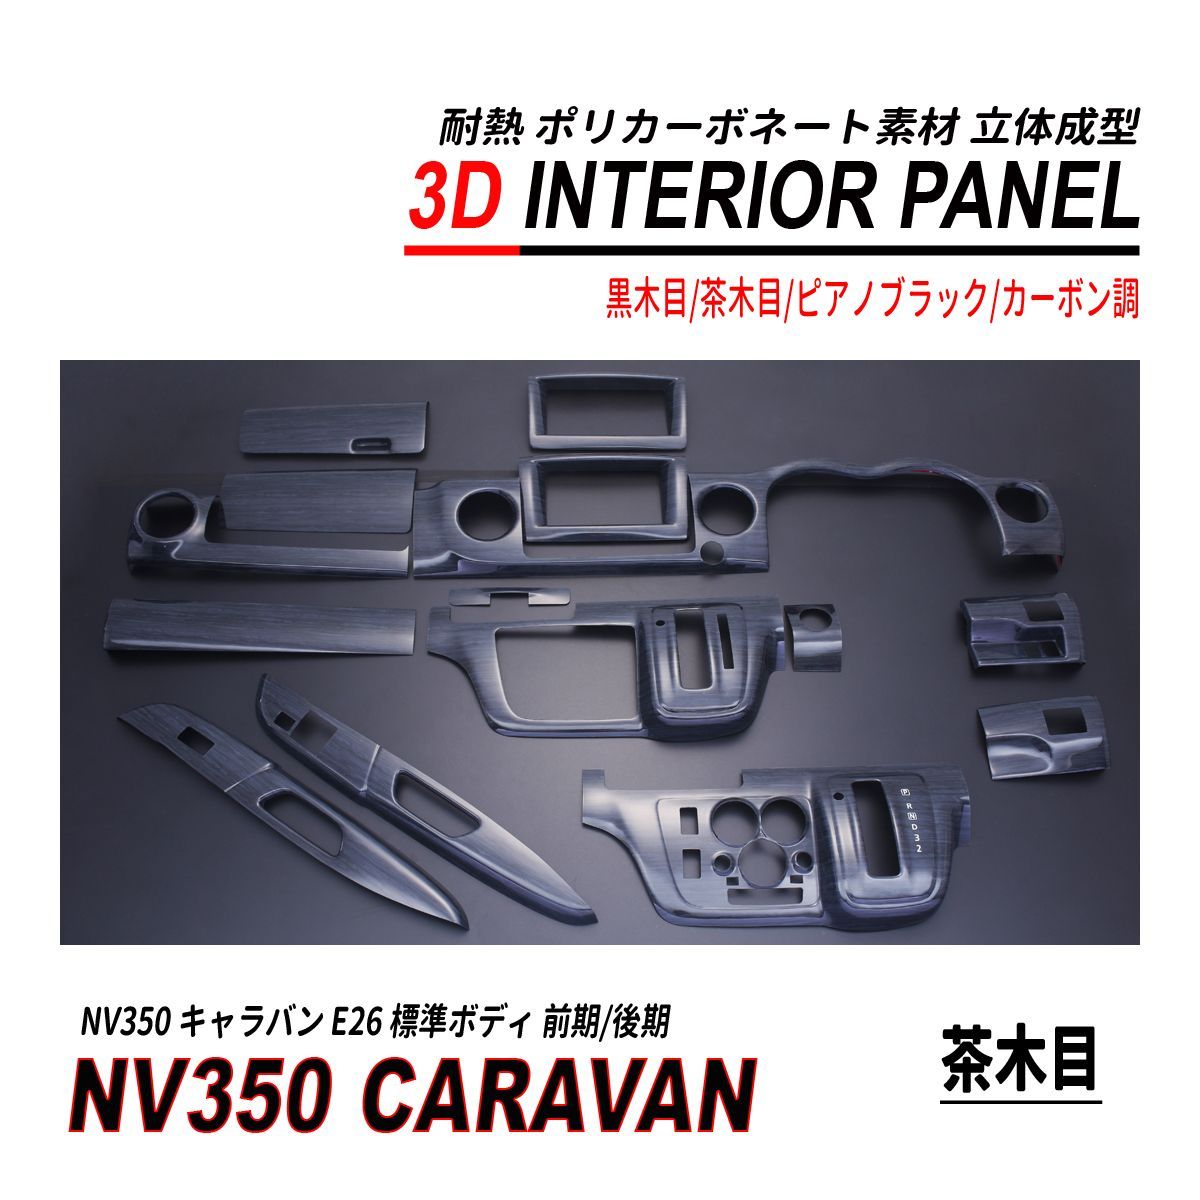 NV350 キャラバン 標準 前期 後期 3D インテリアパネル 15P 耐熱